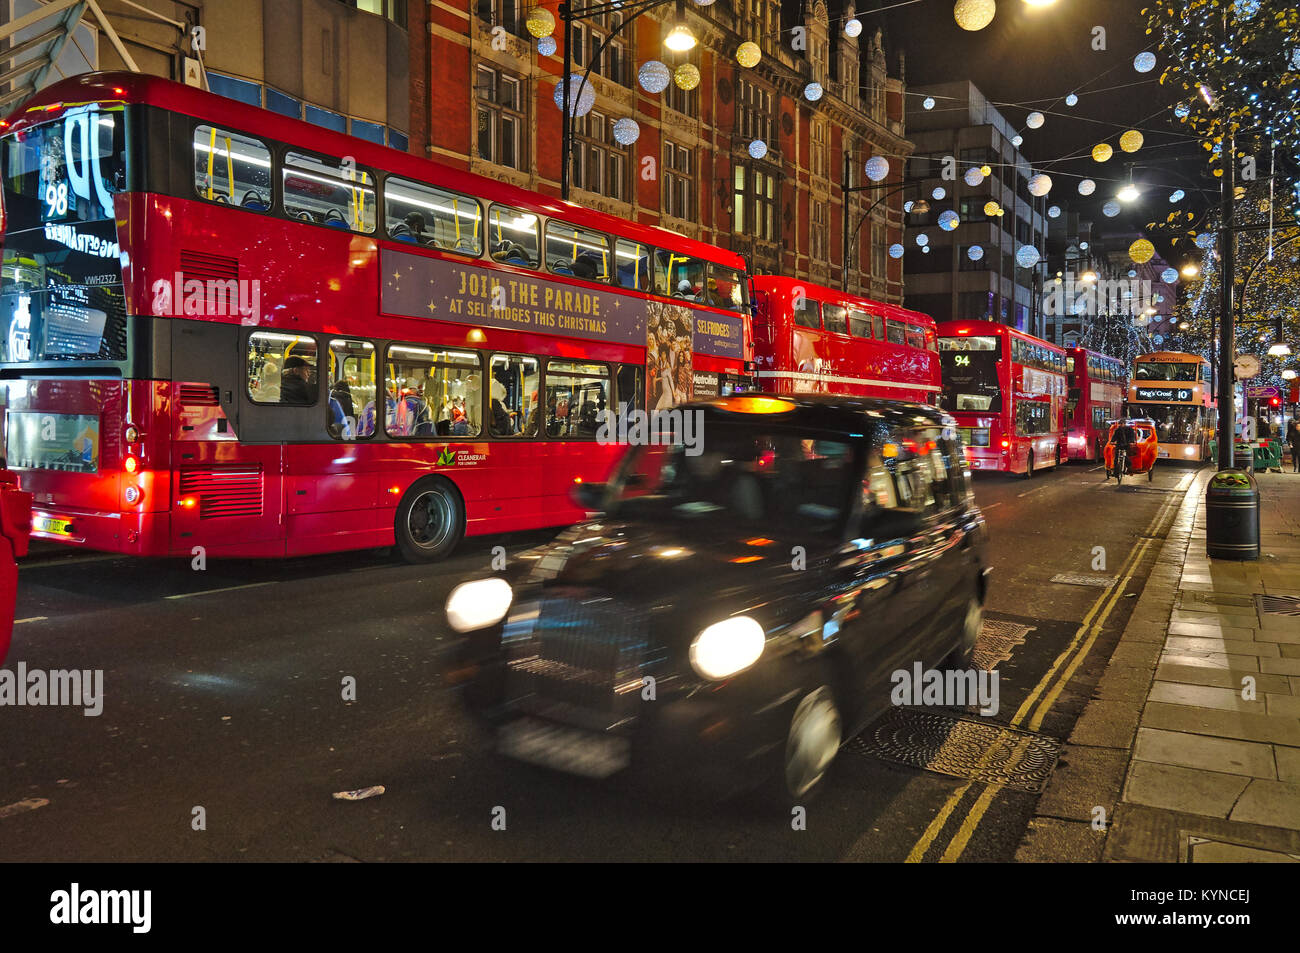 Oxford street pendant la période de Noël à Londres. Angleterre, Royaume-Uni Banque D'Images